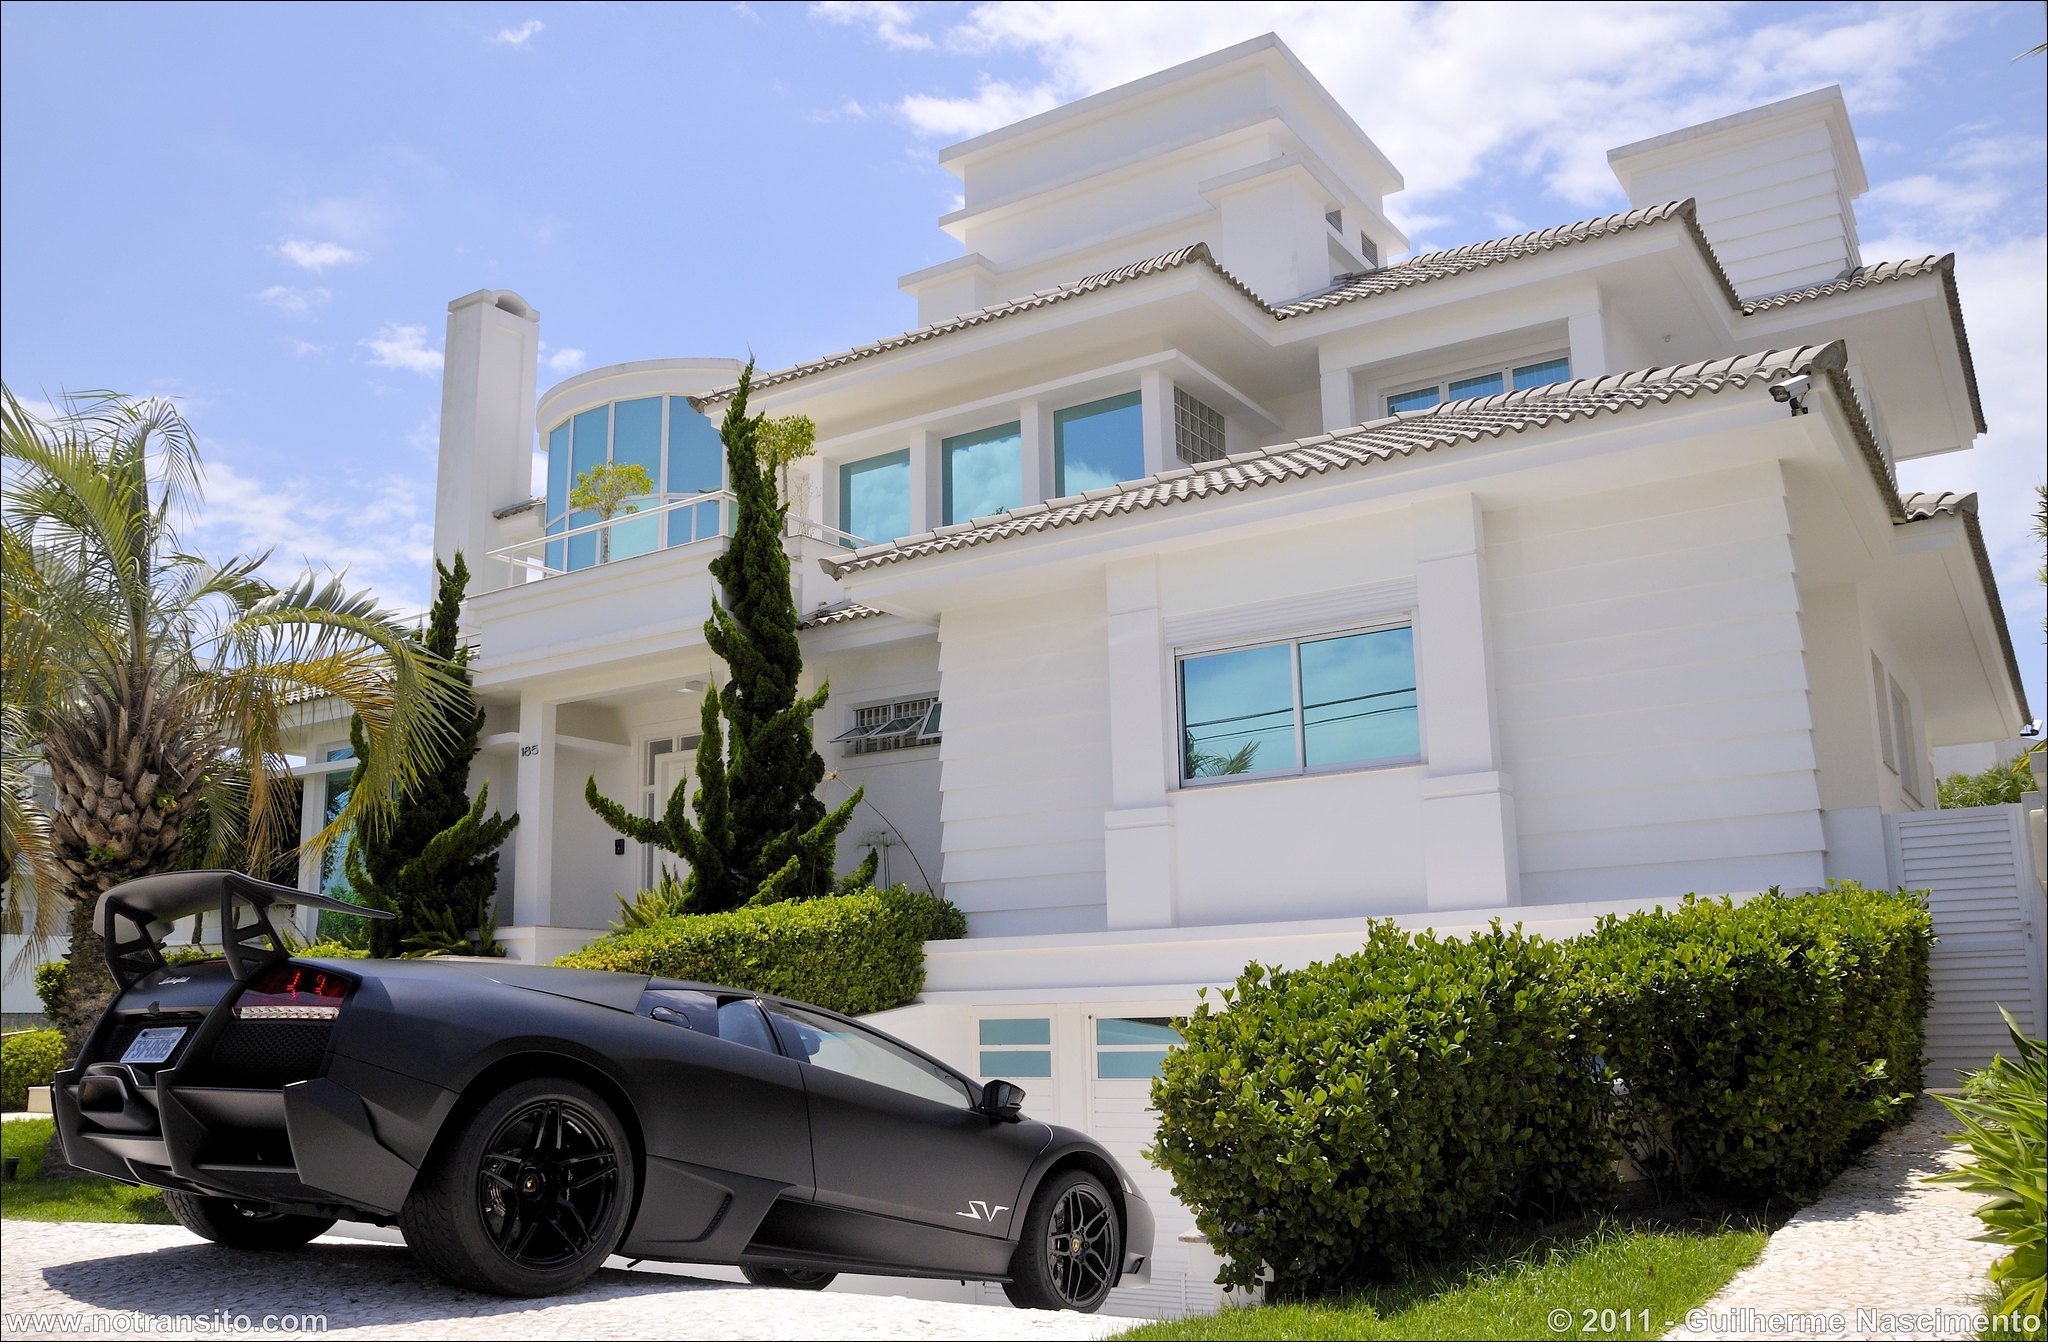 Мужчина машина квартира. Богатая жизнь. Богатый дом. Красивый дом с машиной. Роскошный особняк с машиной.